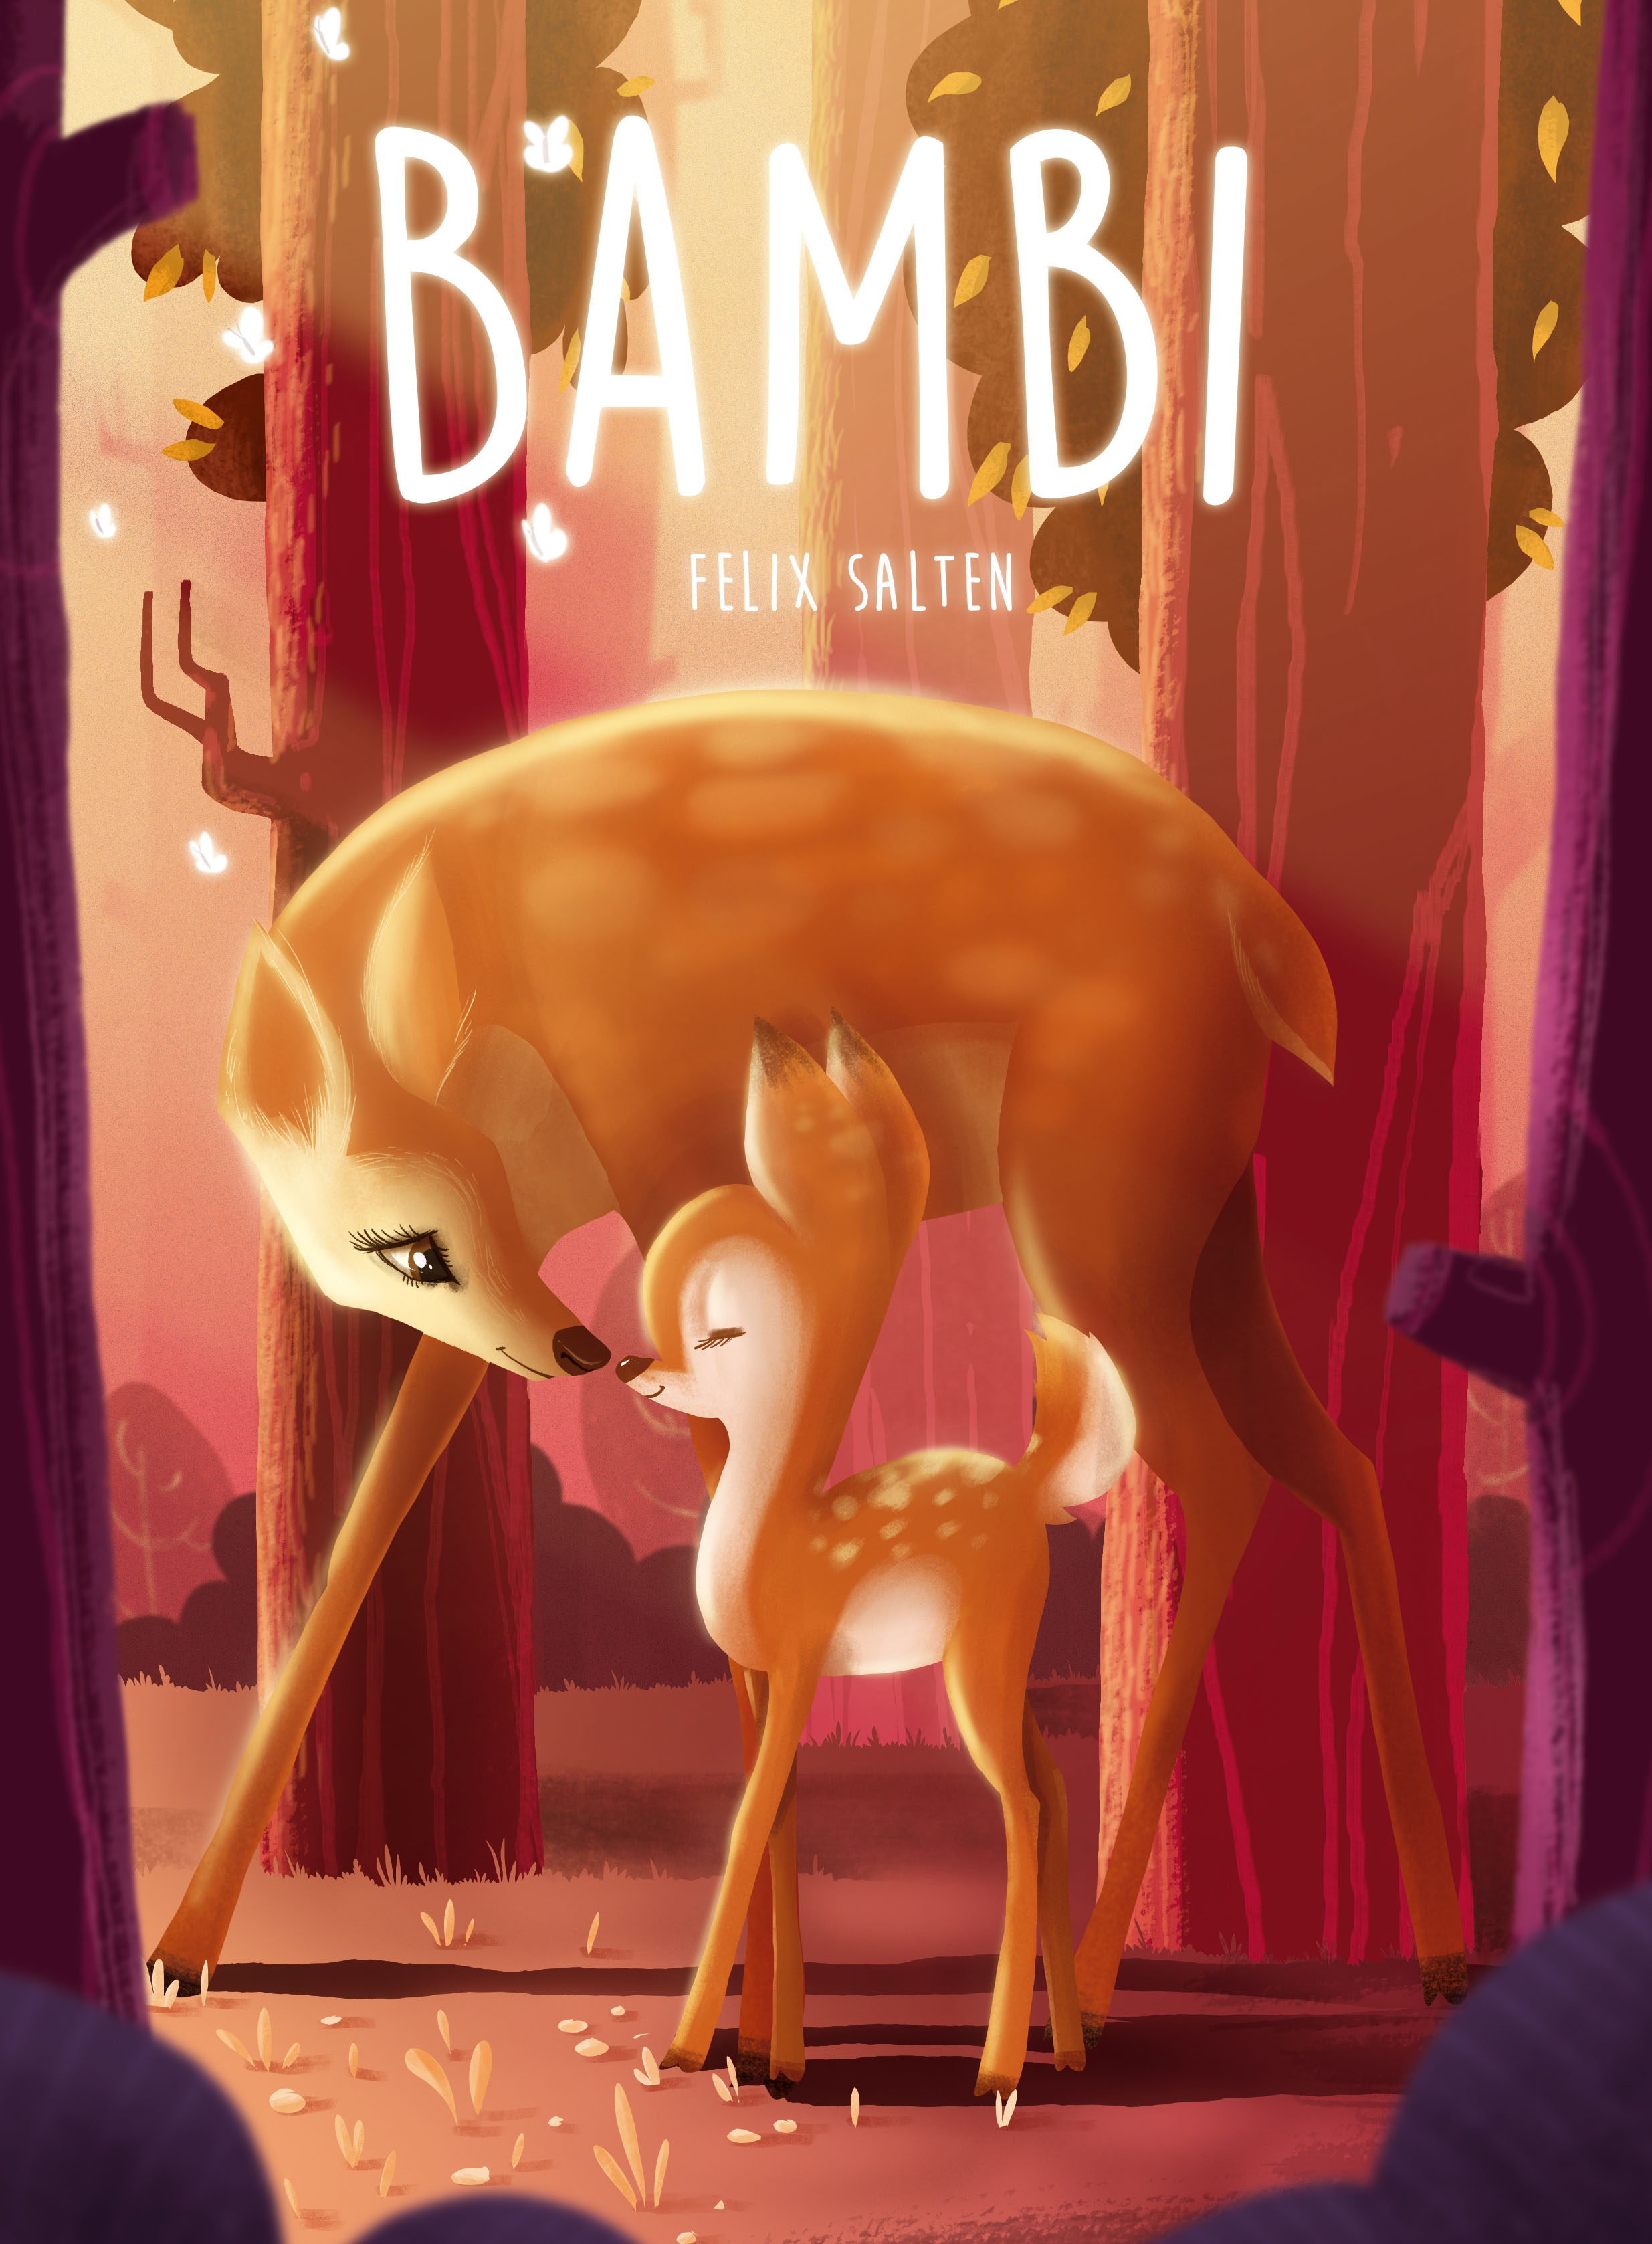 Bambi (lb. maghiara) - Felix Salten